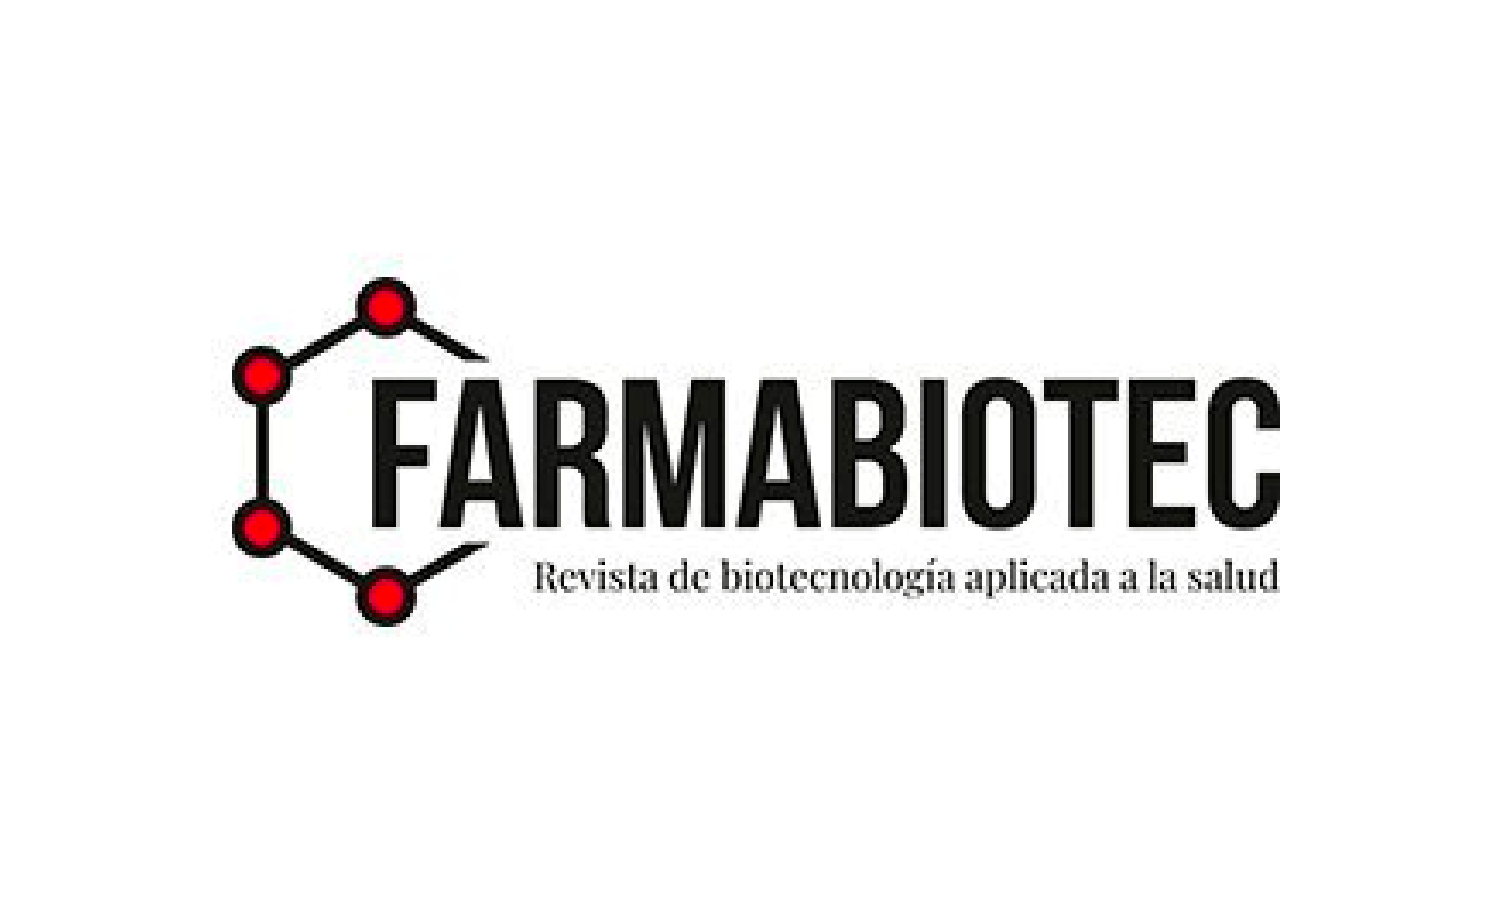 Farmabiotec Revista de biotecnología aplicada a la salud